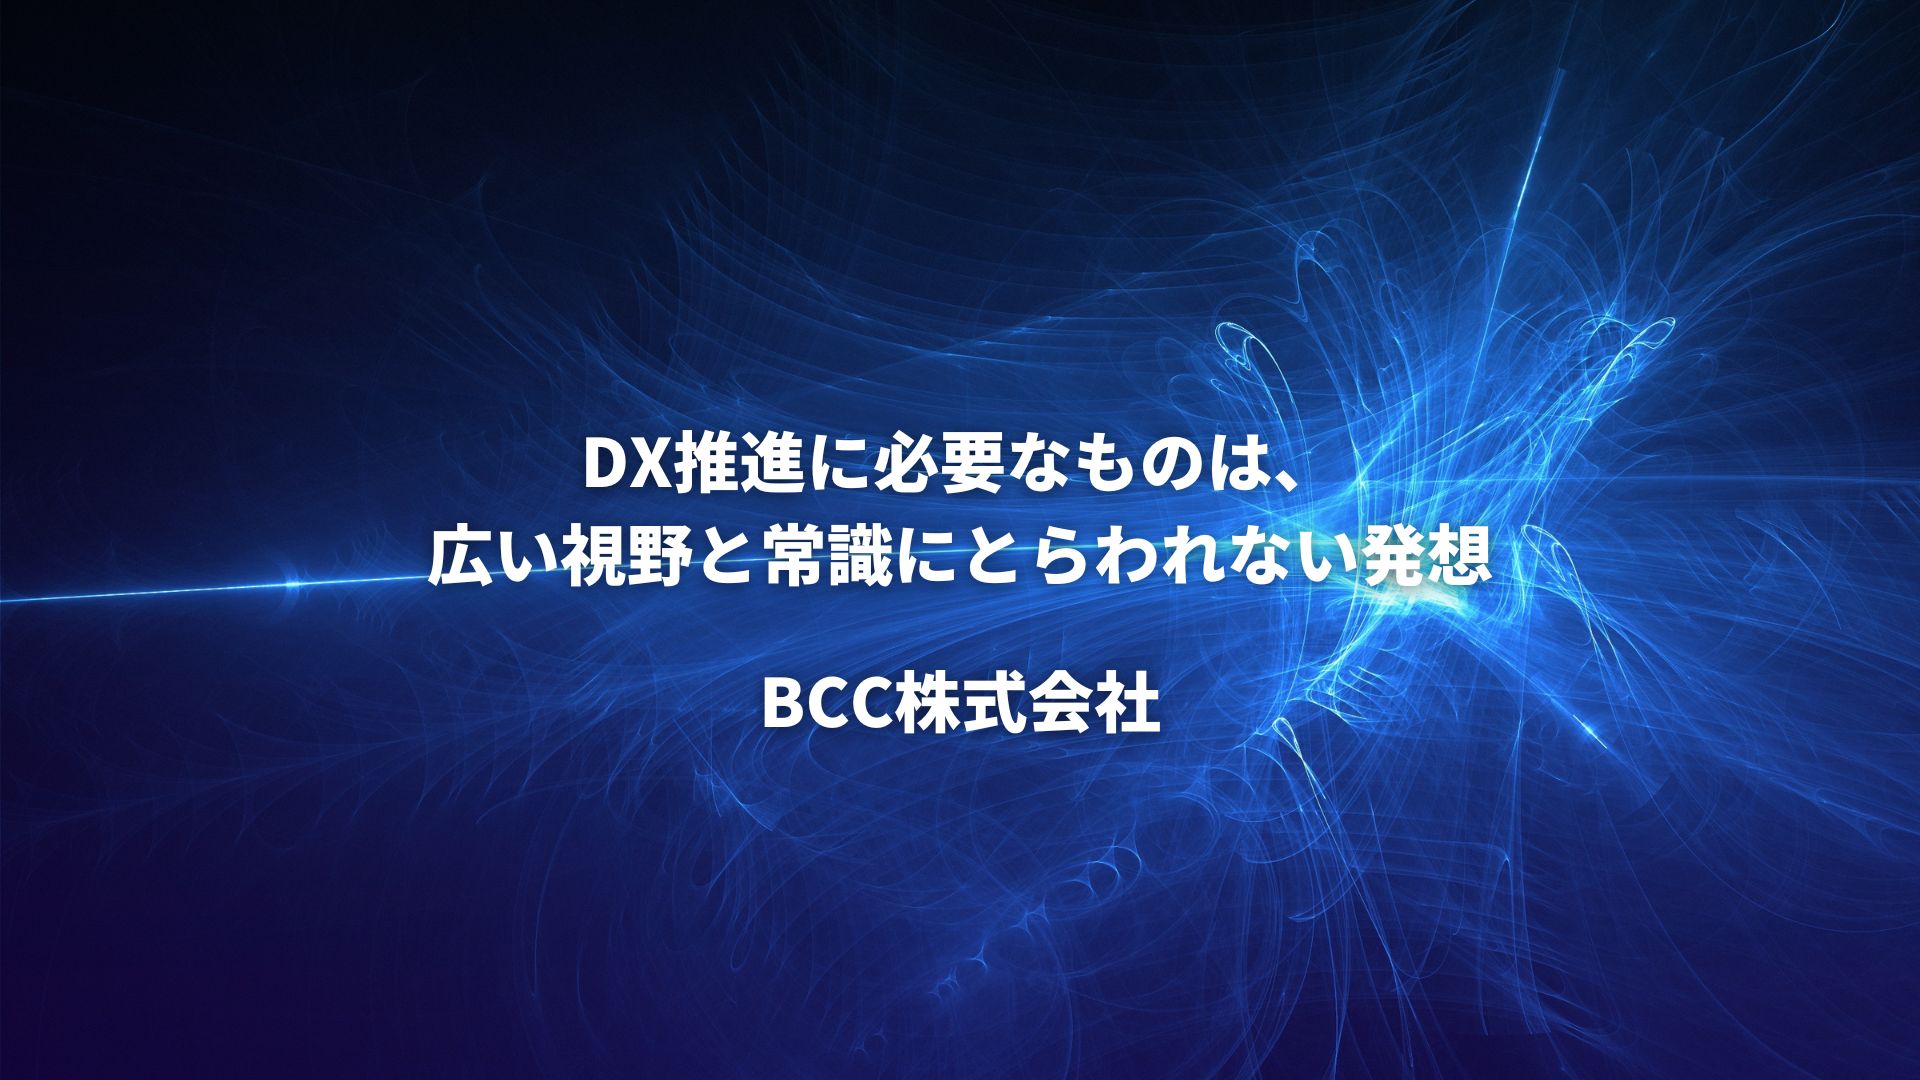 DX推進に必要なものは、広い視野と常識にとらわれない発想【BCC株式